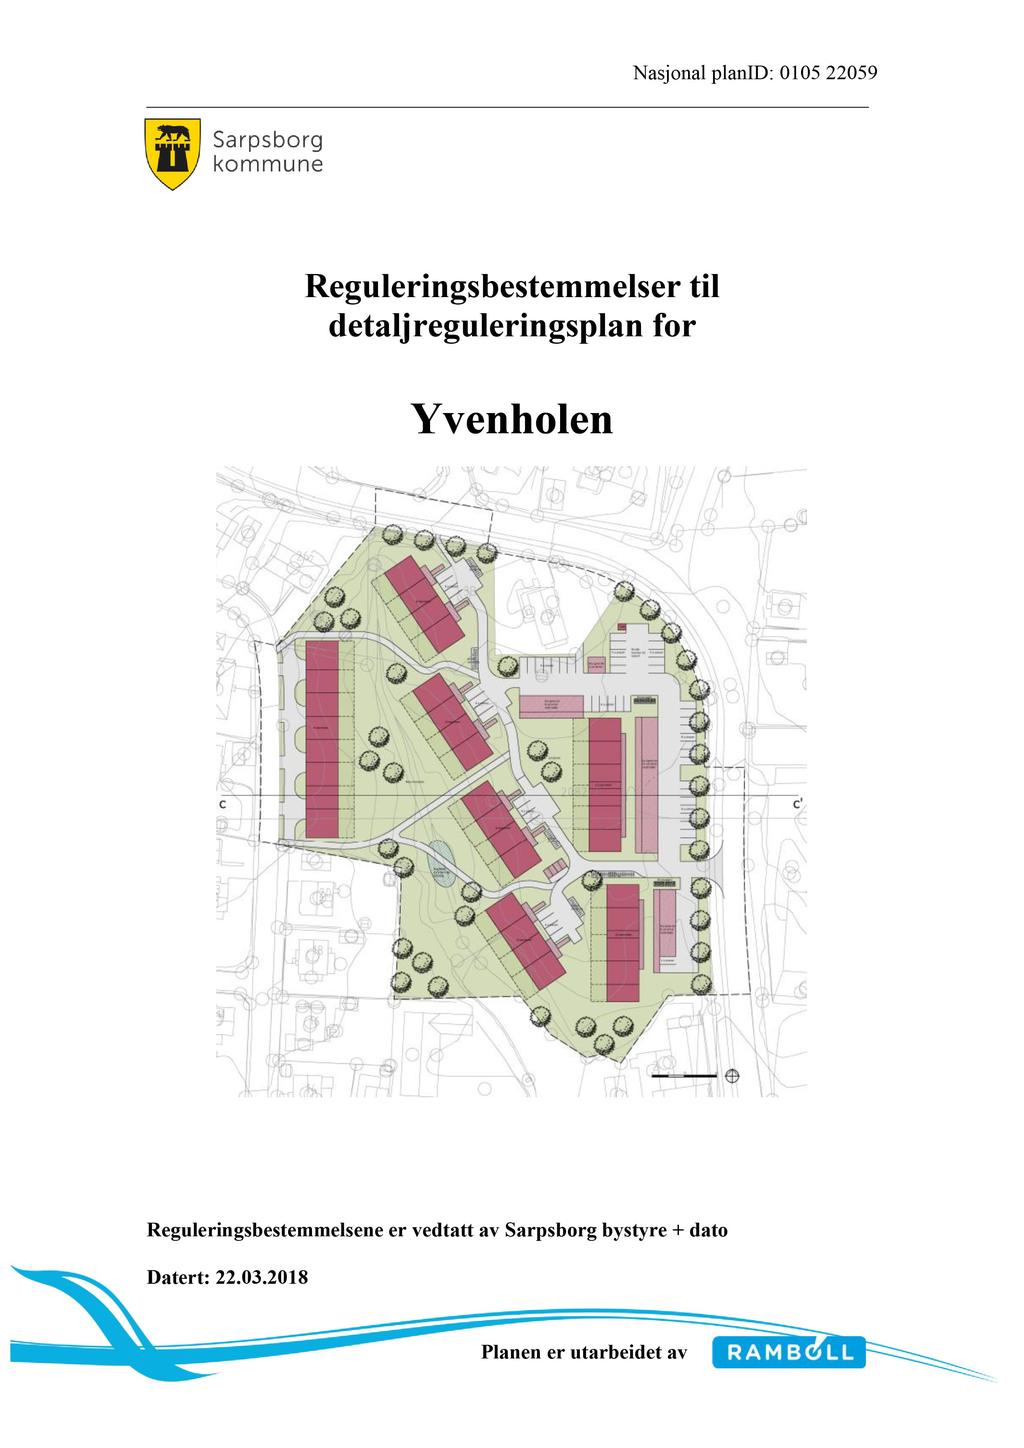 Nasjonal planid: 010522059 Reguleringsbestemmelser til detaljreguleringsplan for Yvenholen